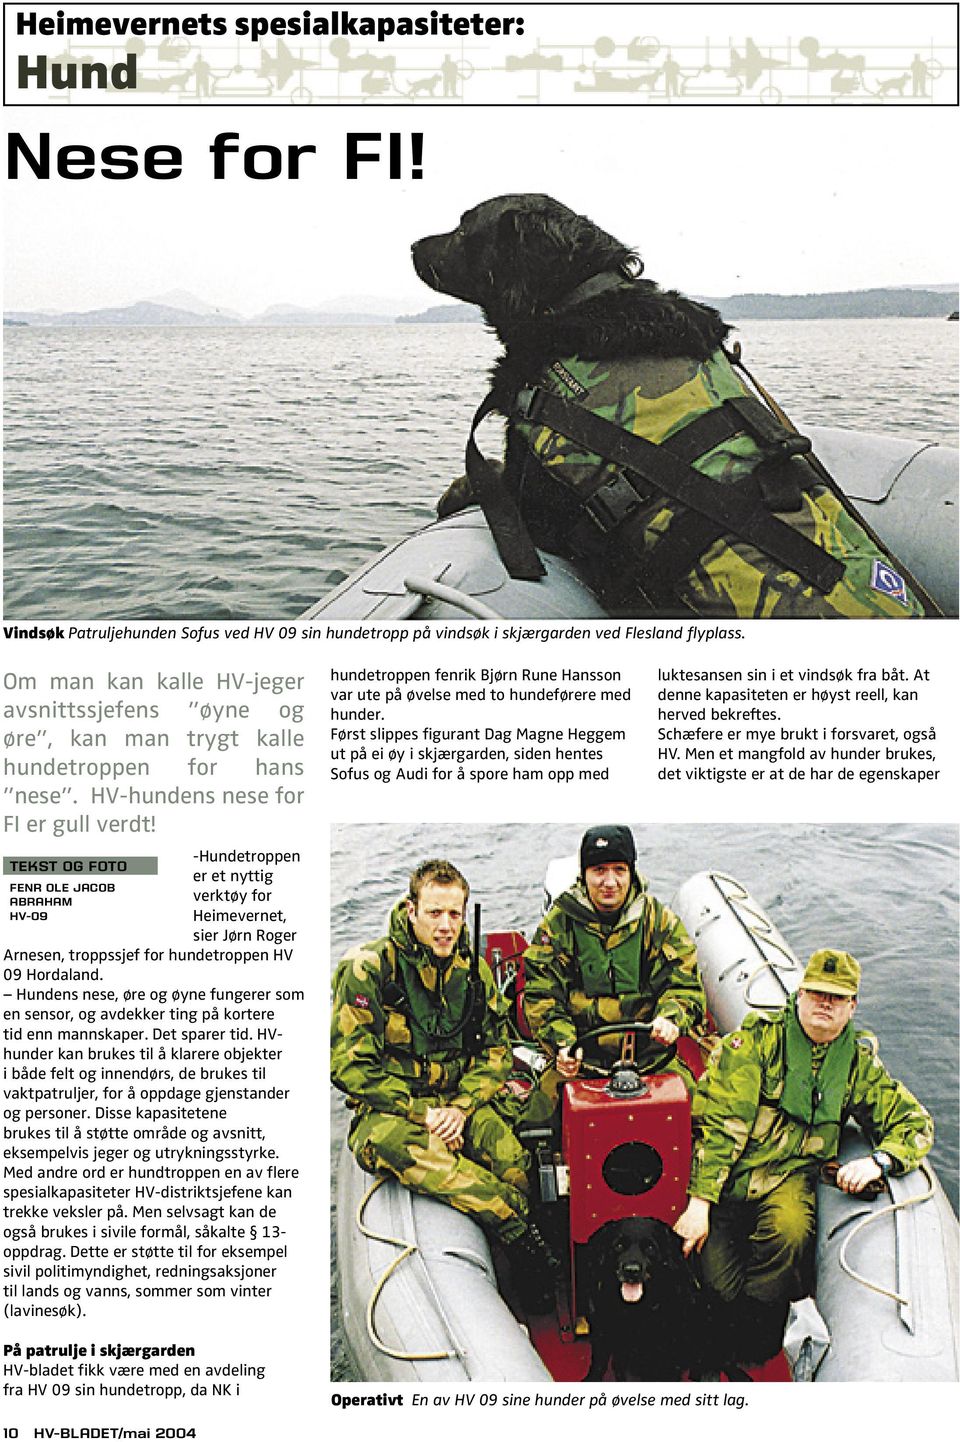 TEKST OG FOTO FENR OLE JACOB ABRAHAM HV-09 -Hundetroppen er et nyttig verktøy for Heimevernet, sier Jørn Roger Arnesen, troppssjef for hundetroppen HV 09 Hordaland.